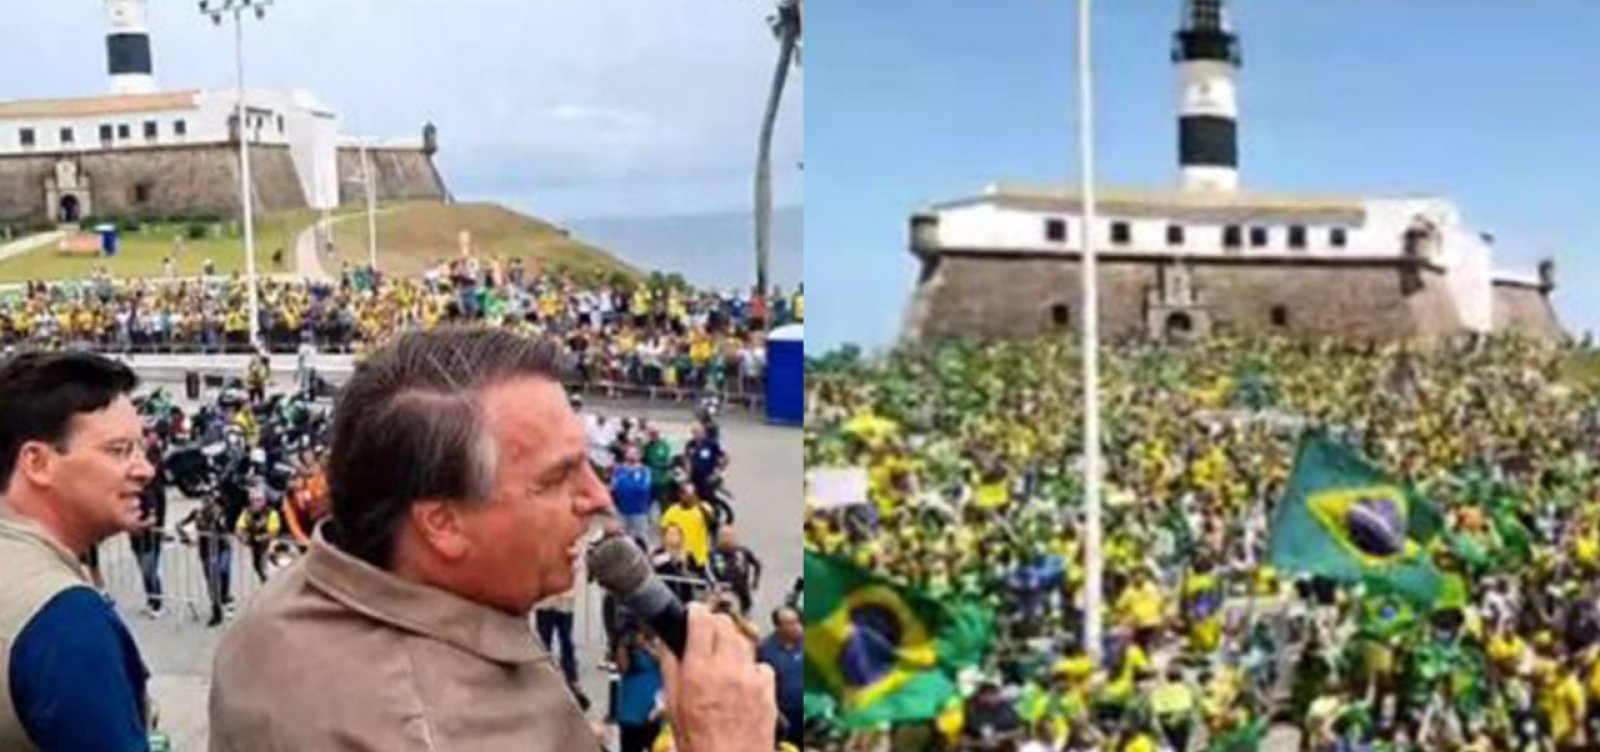 Militância divulgou vídeo antigo em ato pró-Bolsonaro no 2 de Julho, diz projeto Comprova